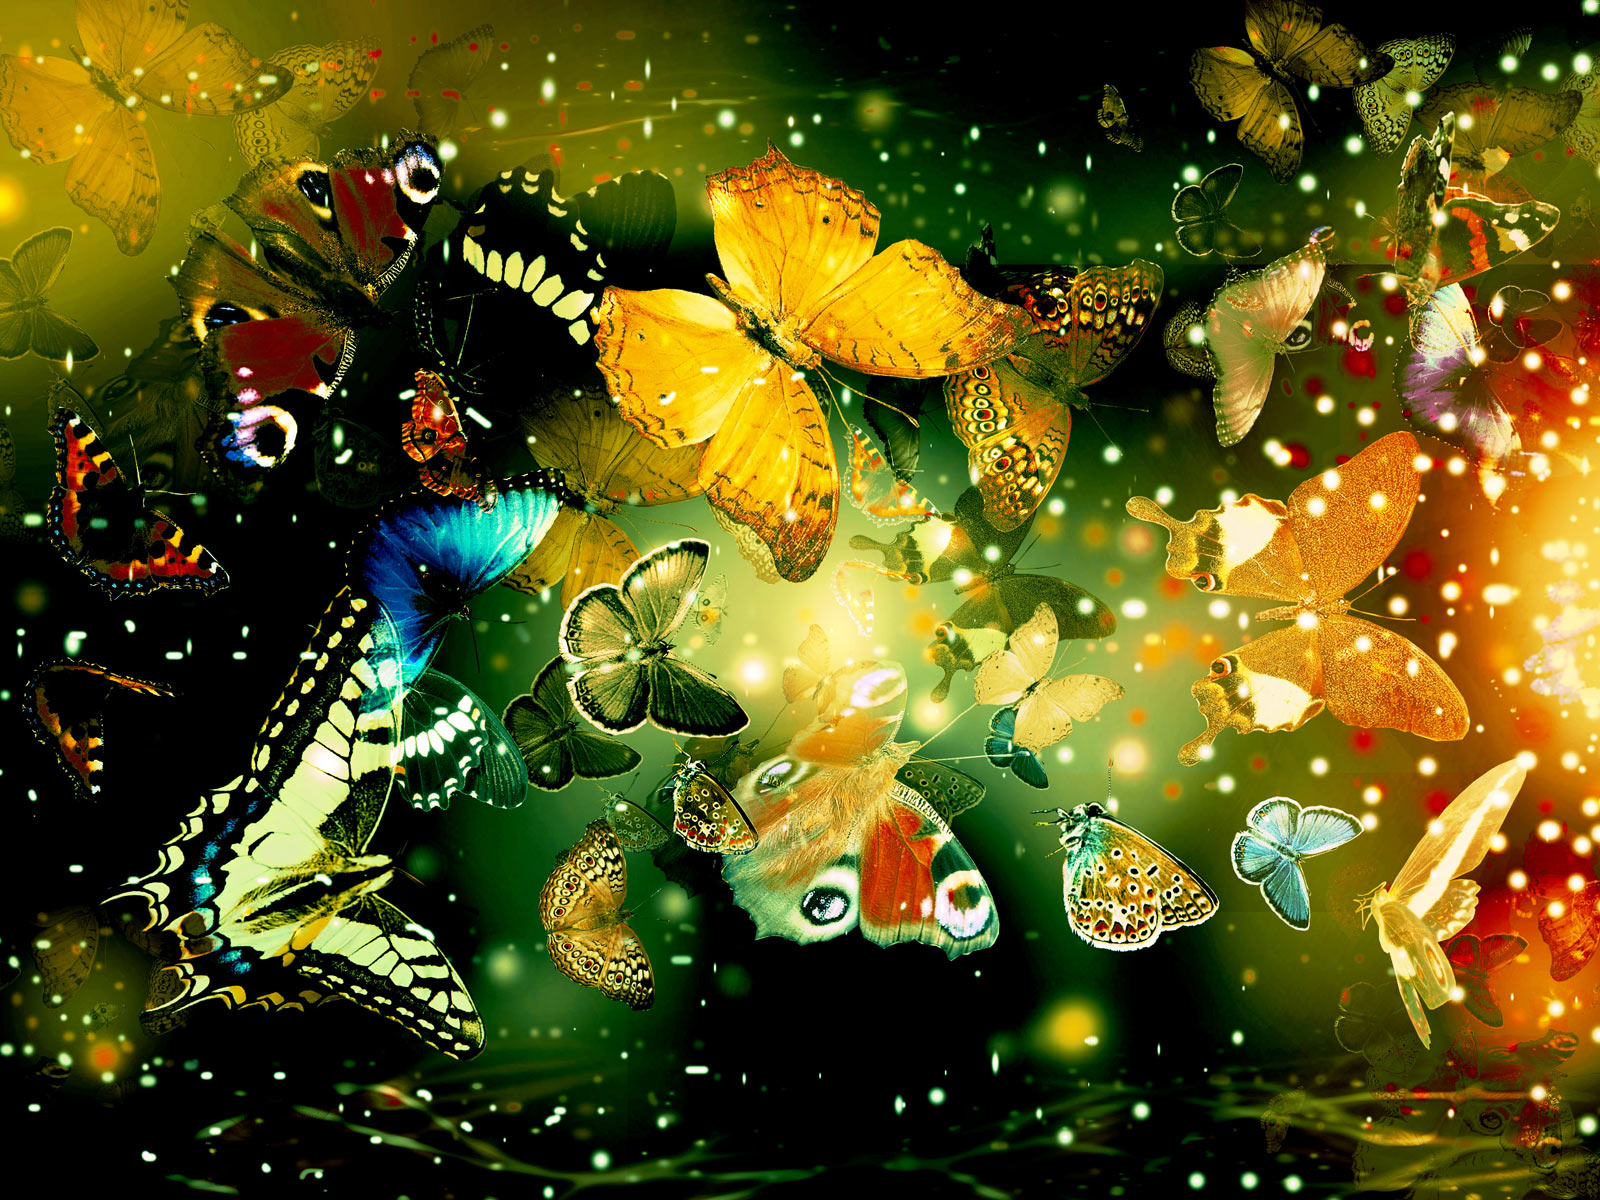 Butterfly Wallpaper For Computer Desktop